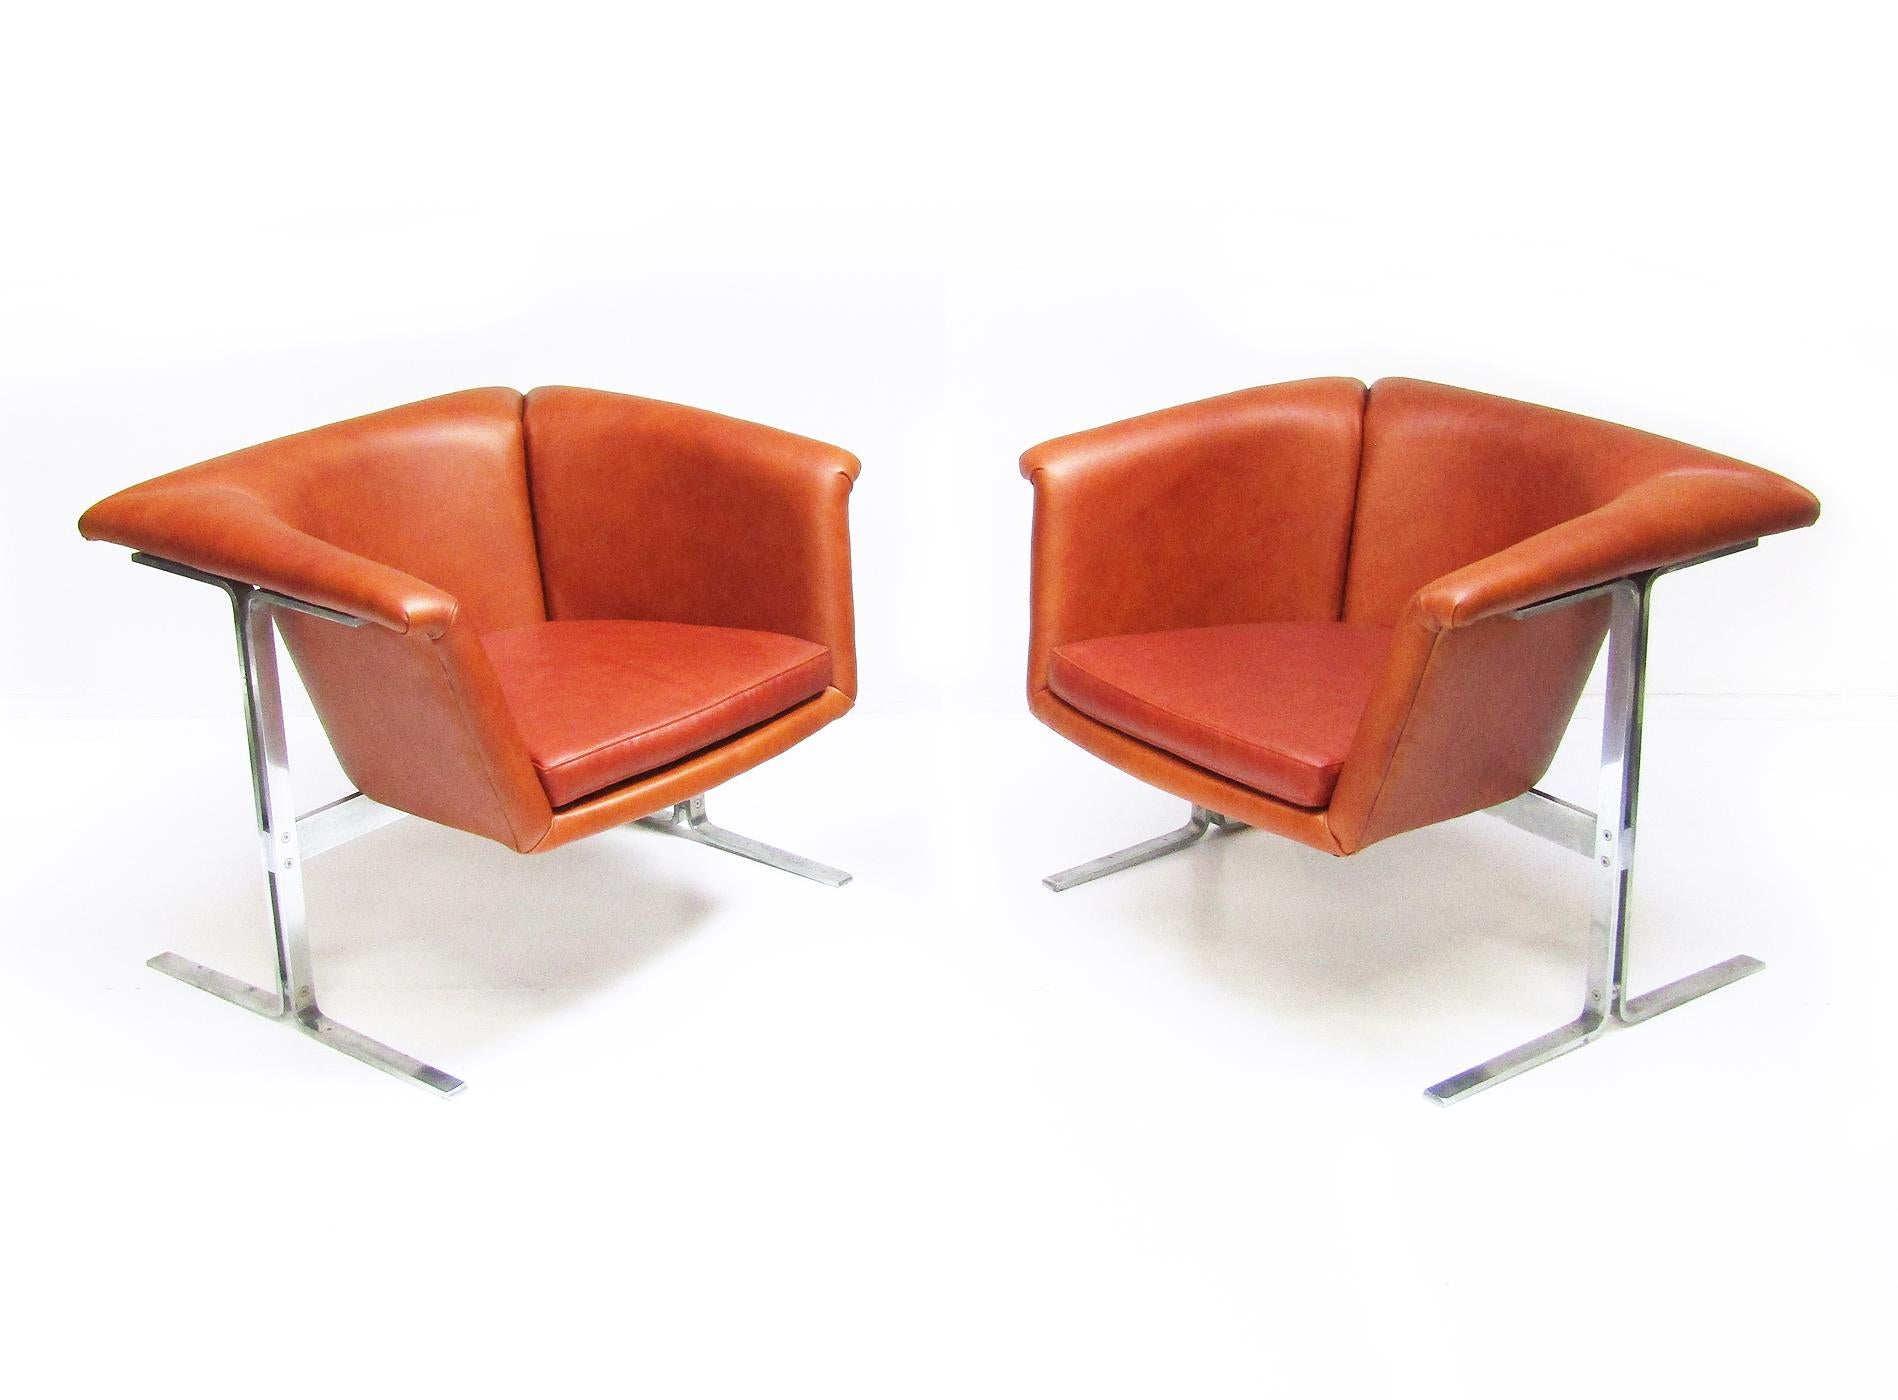 Une paire de chaises modèle 042 en cuir cognac par Geoffrey Harcourt pour Artifort.

Produites en 1963, les chaises 042 de Harcourt ont été présentées dans le film phare de Stanley Kubrik 